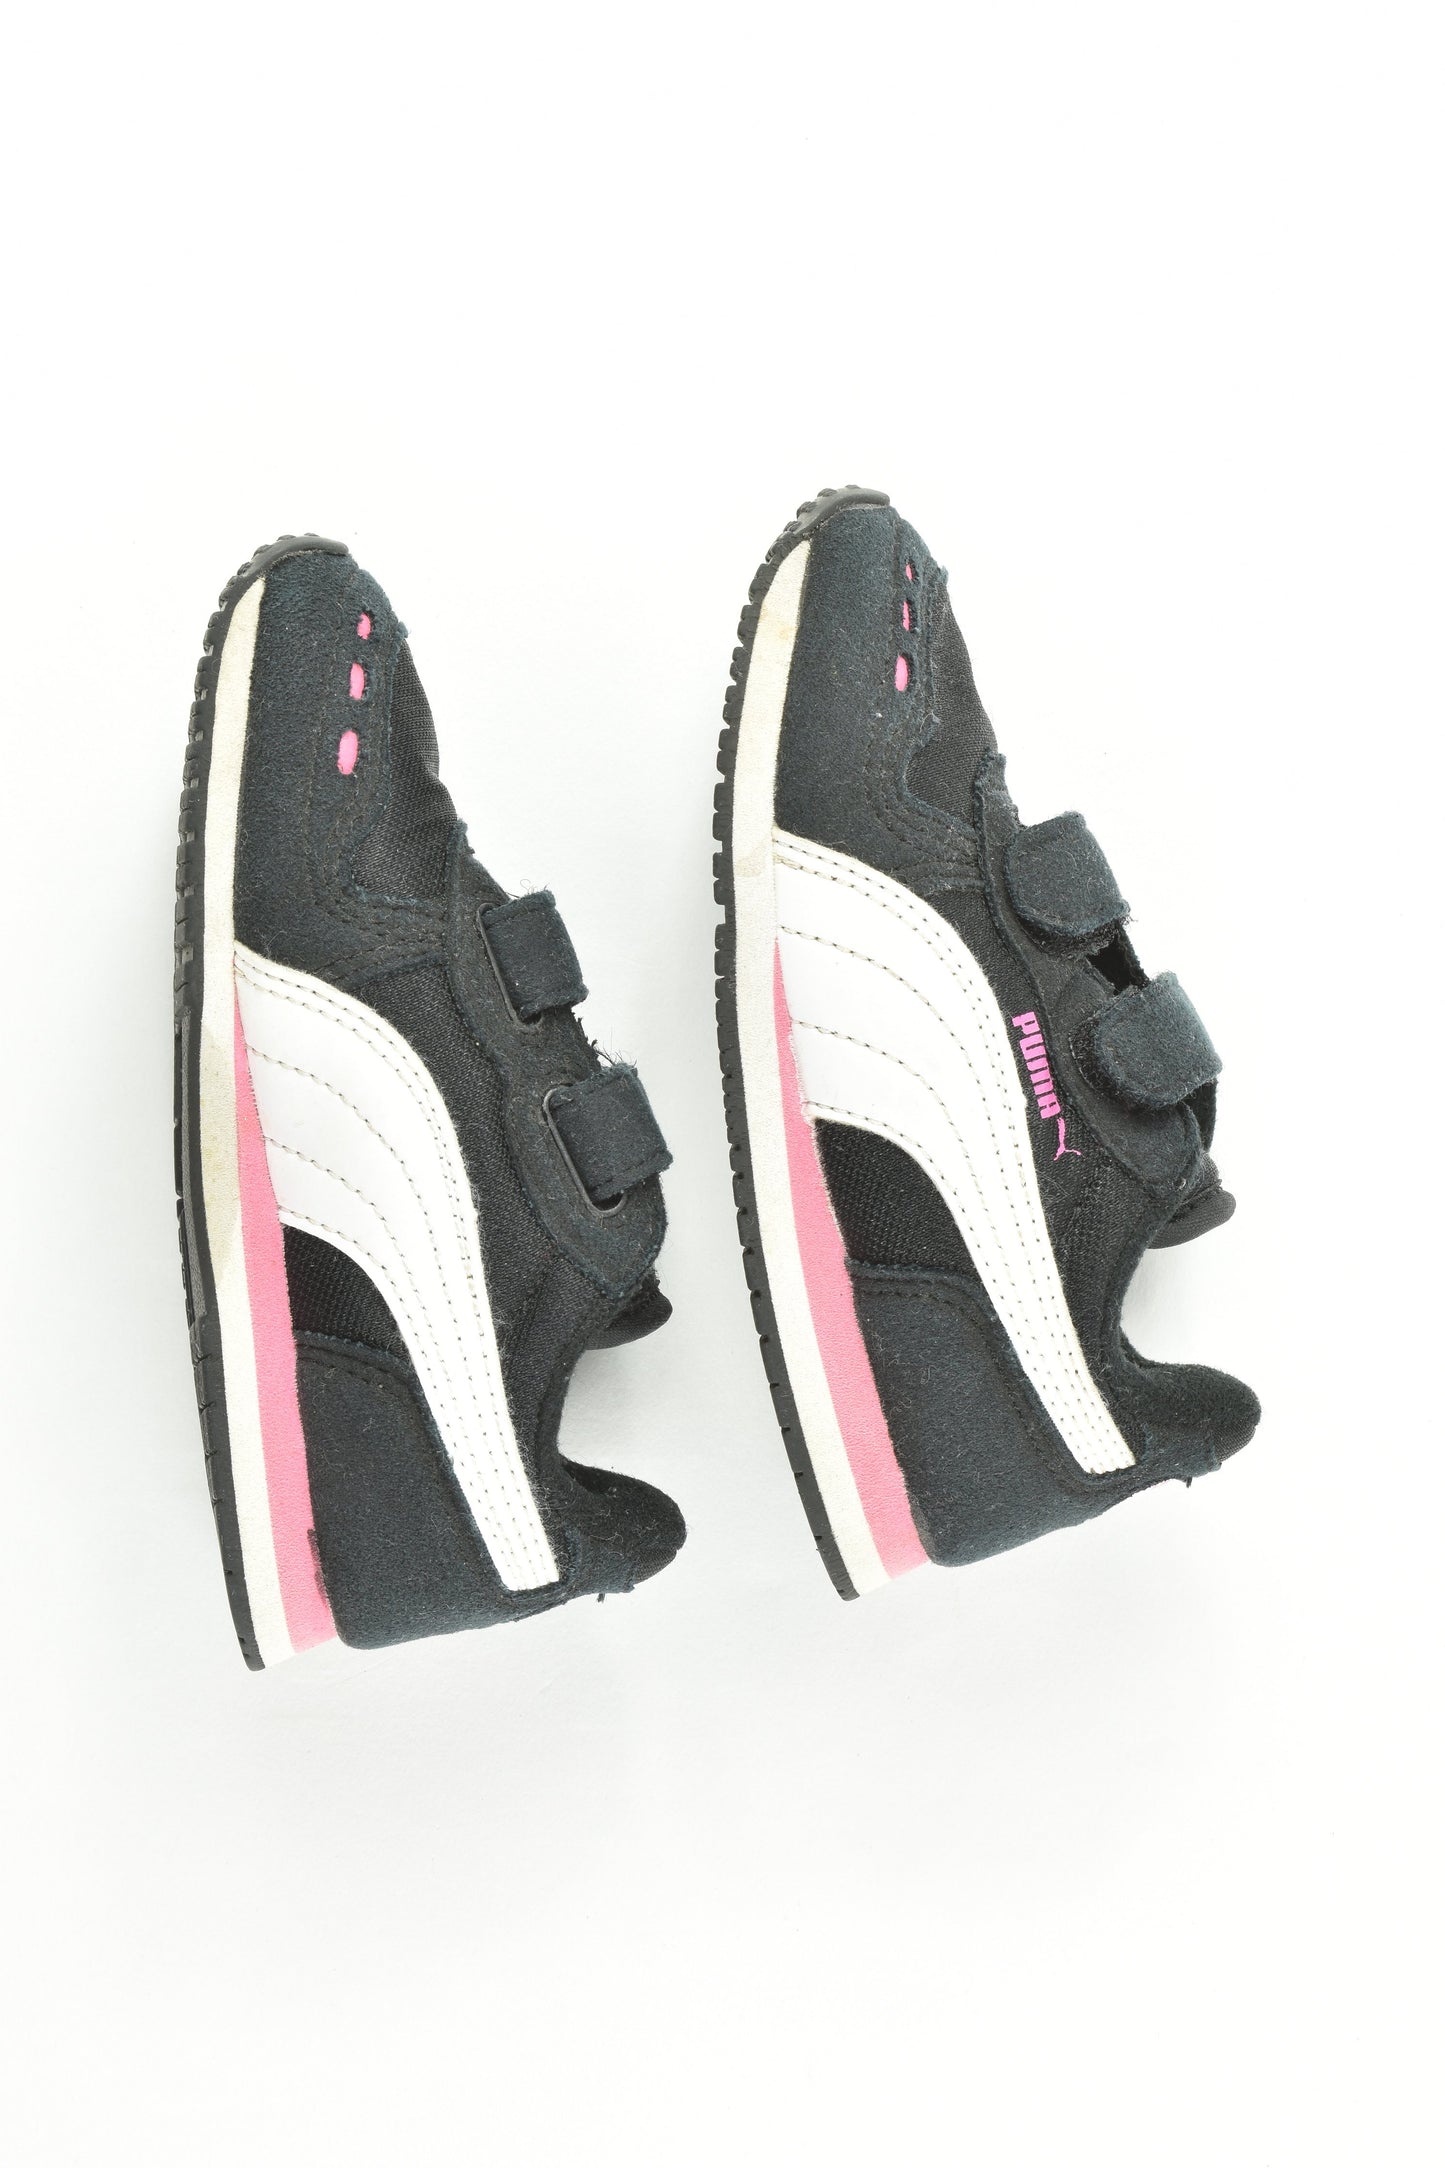 Puma Size UK 8 Shoes